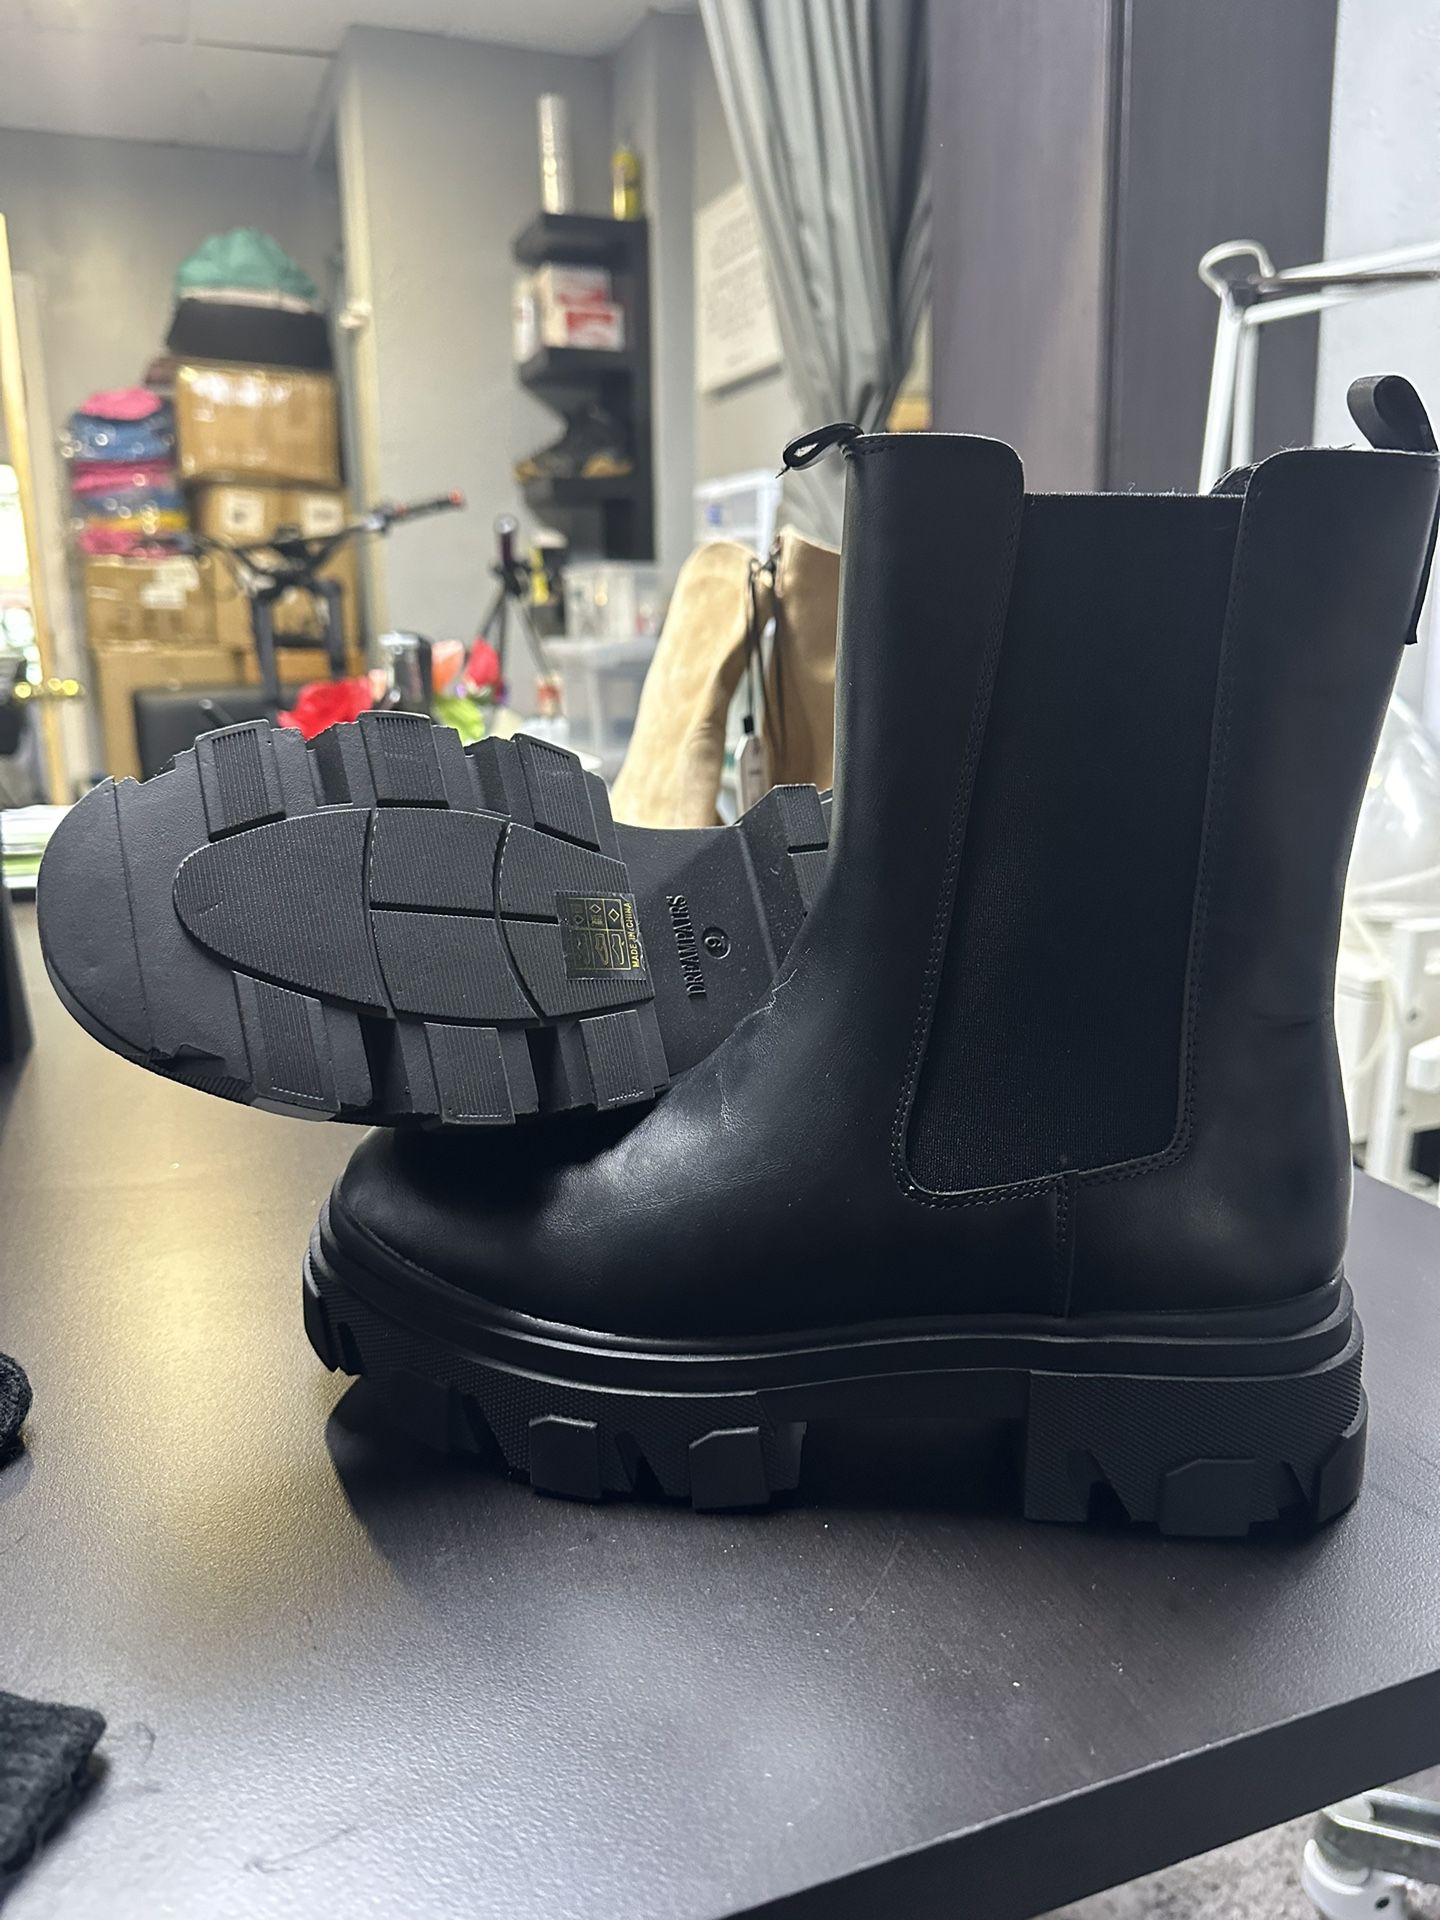 Express rain boots